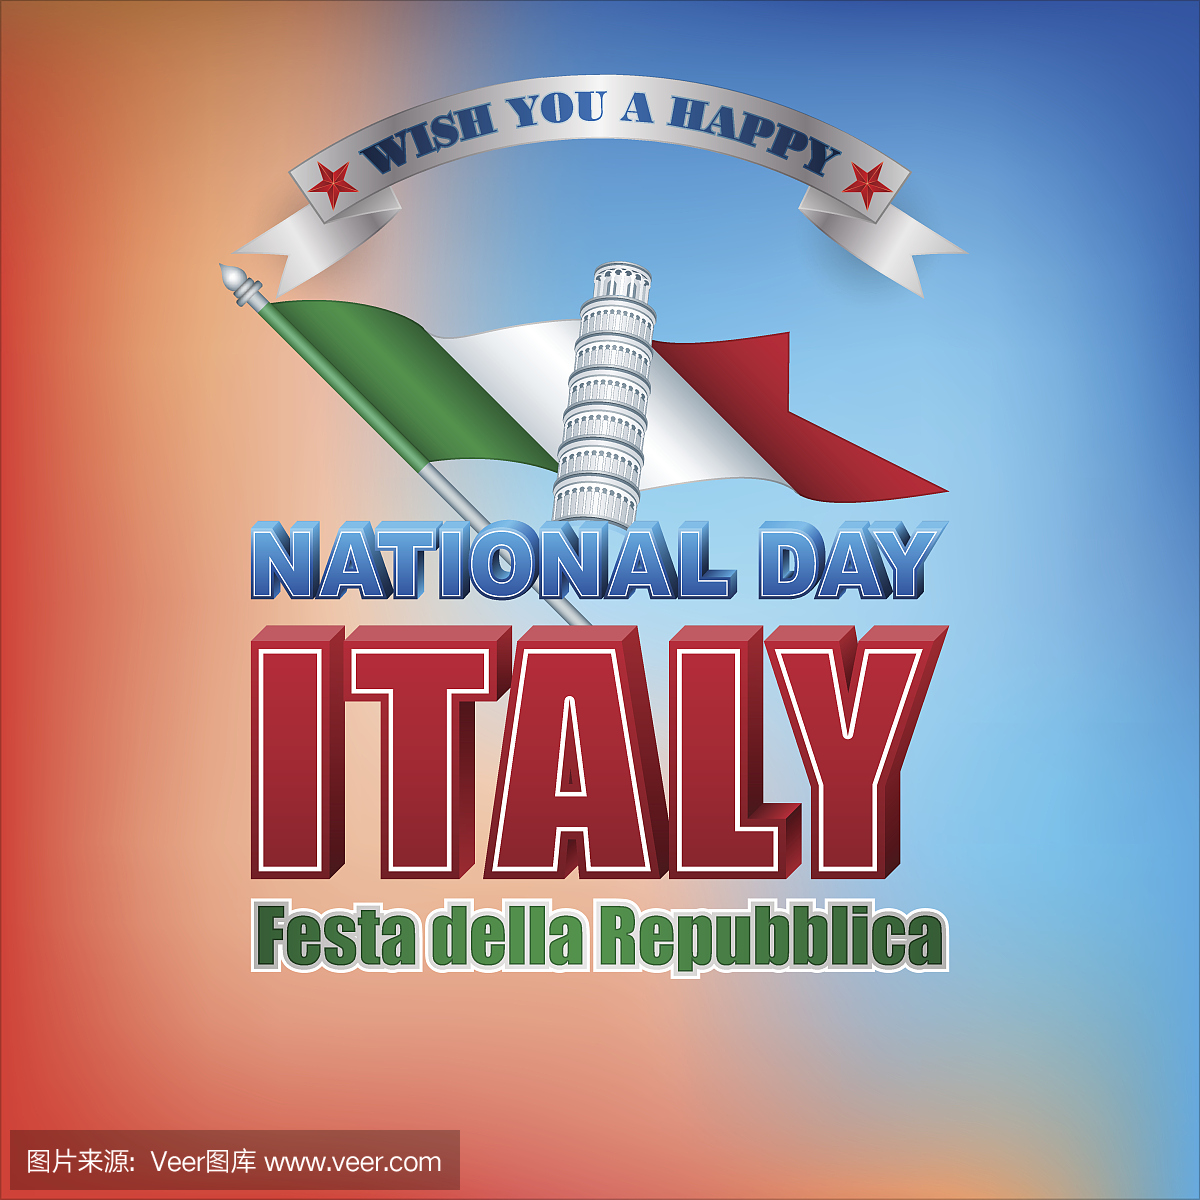 意大利,国庆节,庆祝活动